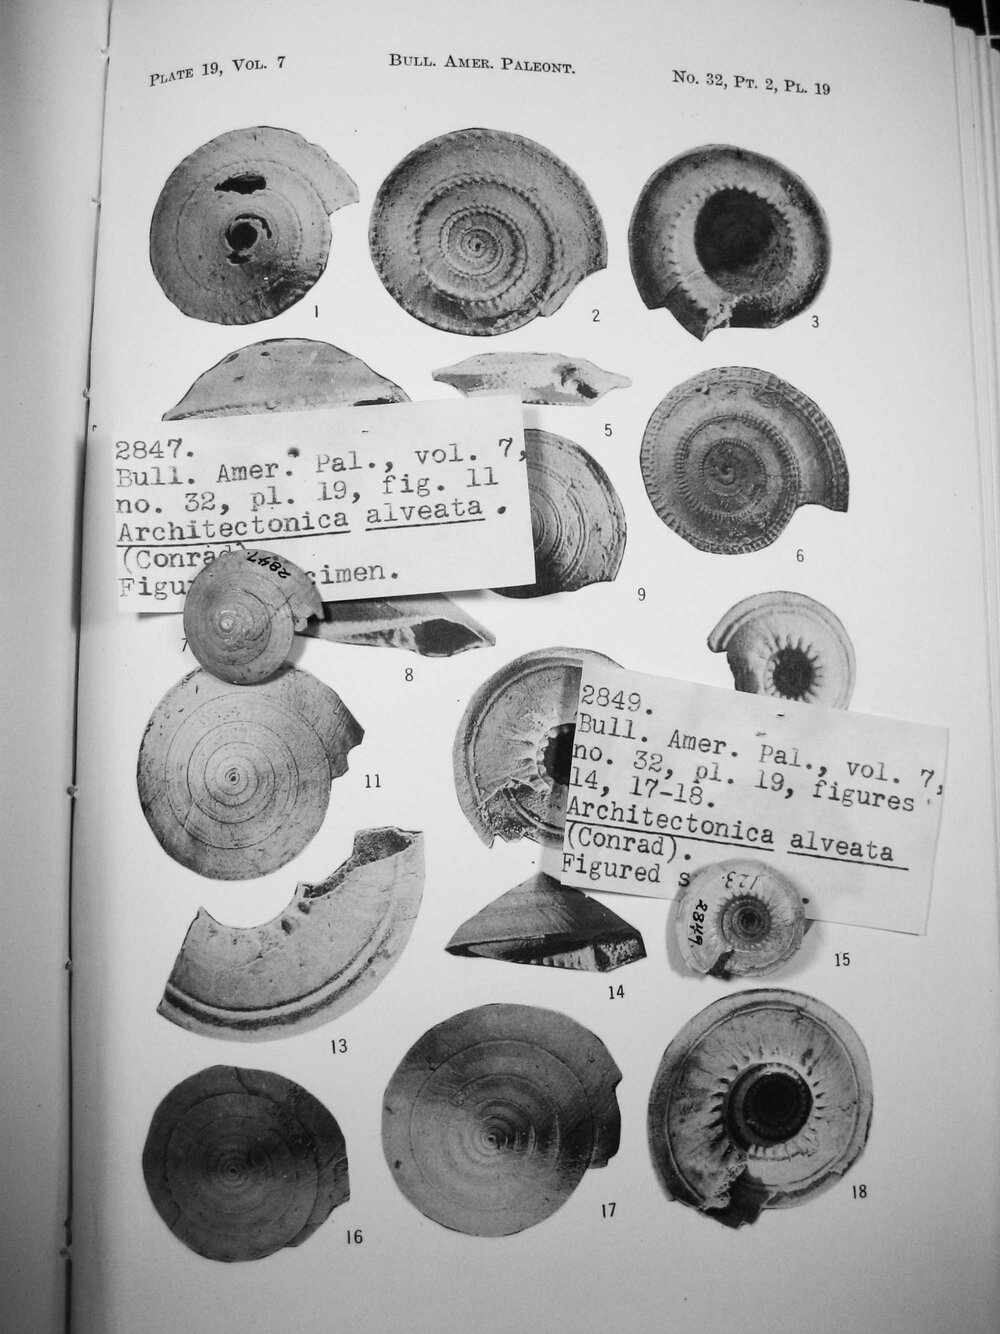 Specimens studied by Katherine, 1937